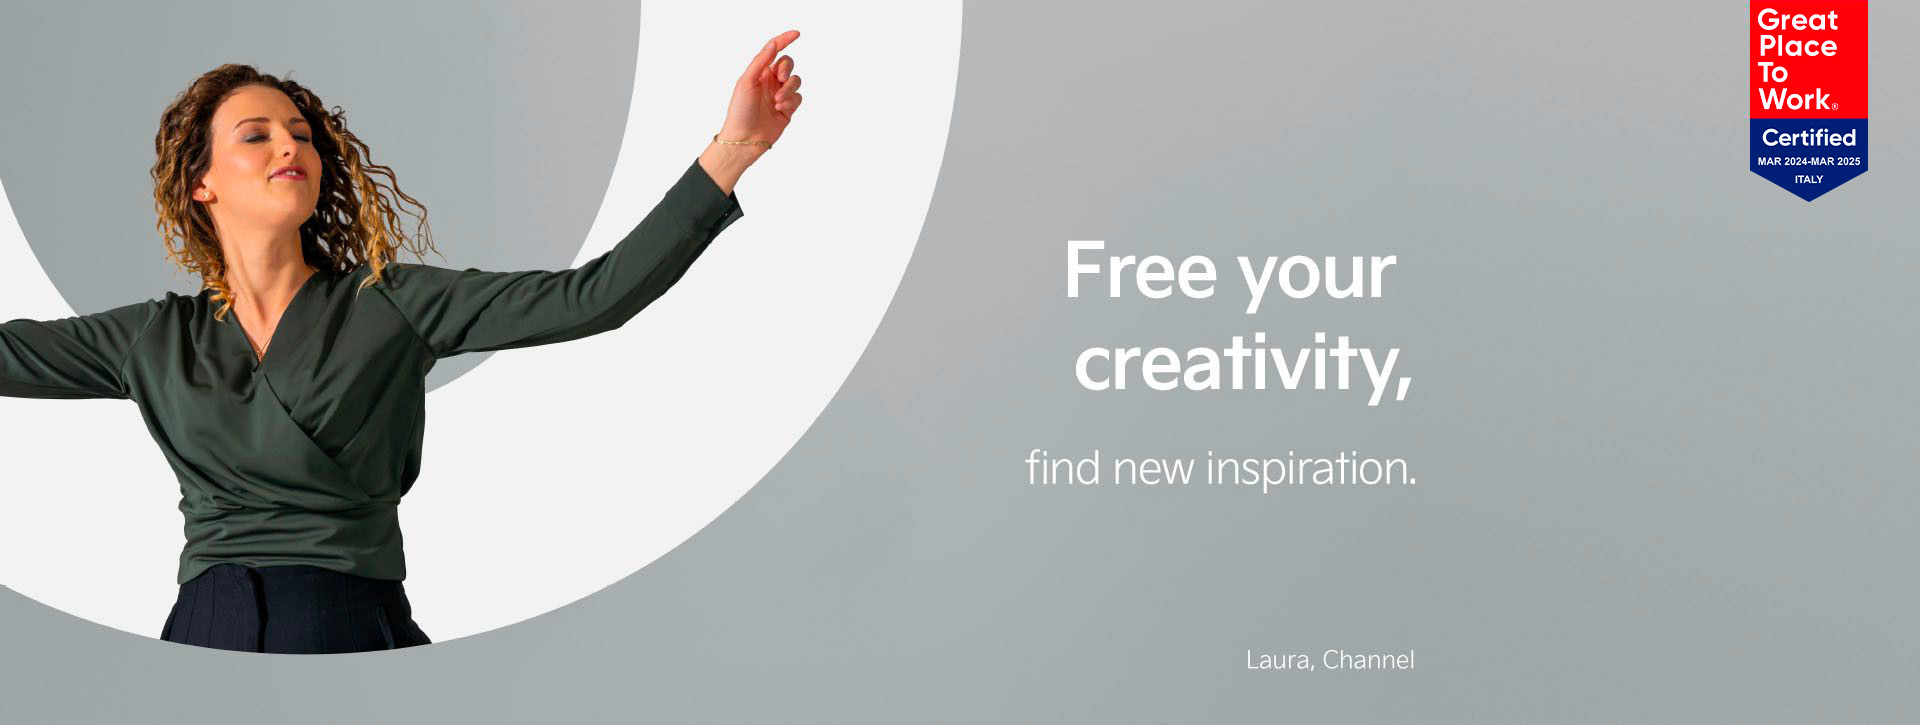 Laura del nostro team Channel danza davanti alla lettera "O". Accanto troviamo lo slogan “Free your creativity - find new inspiration”.